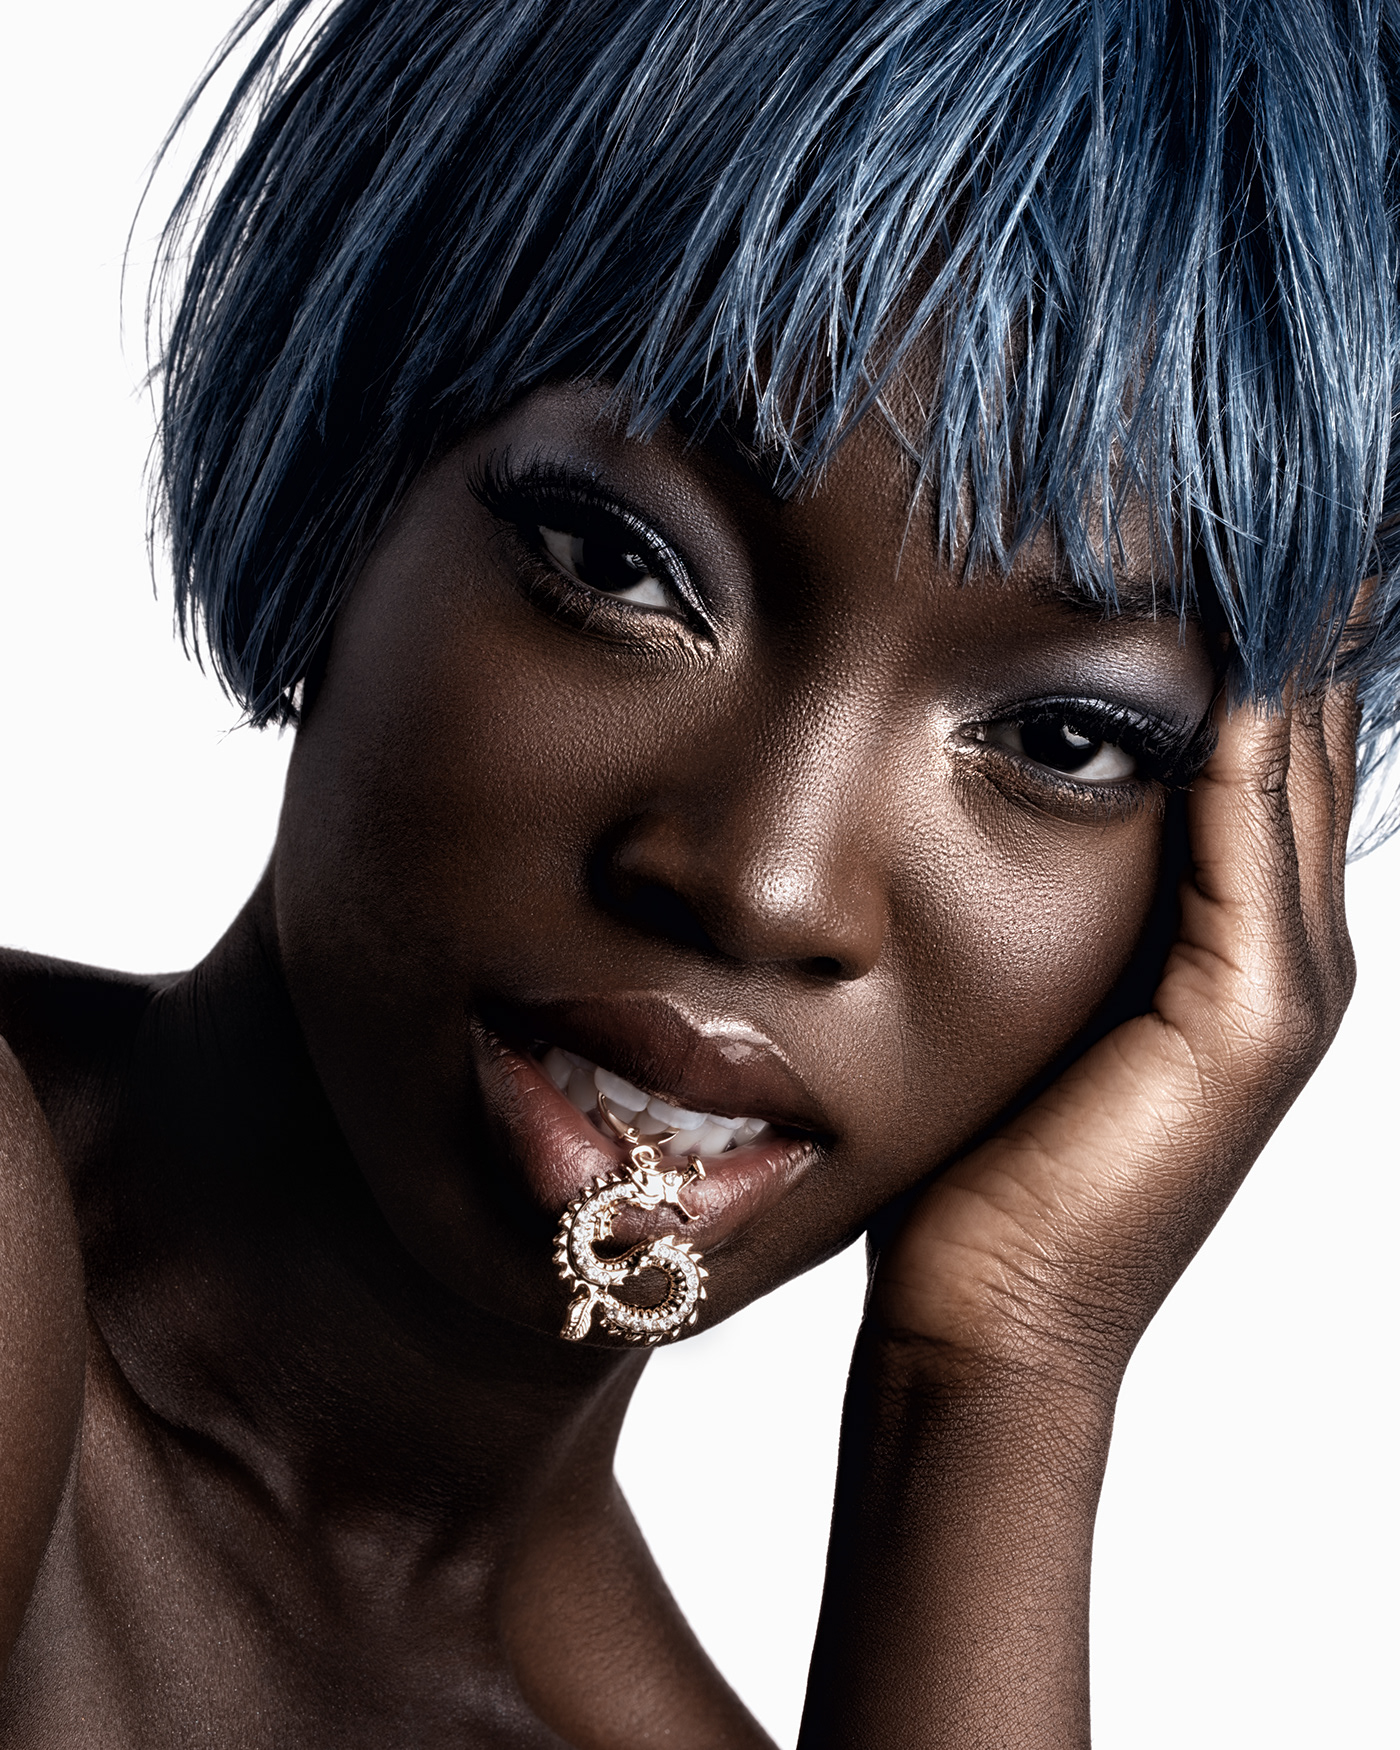 beauty beauty photography dark skin Los Angeles model portrait studio